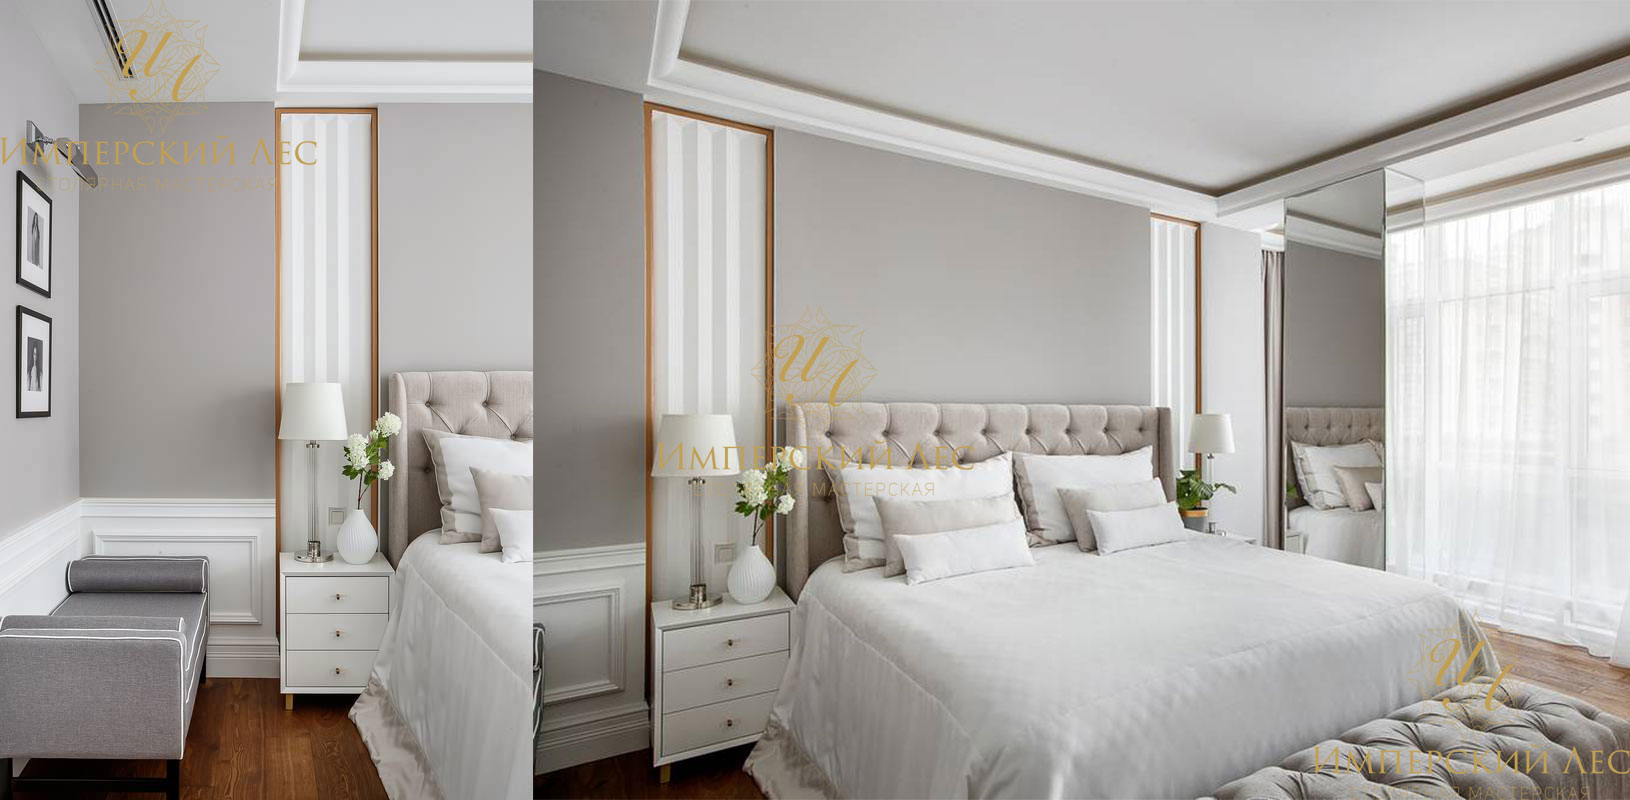 Кровать со спальным гарнитуром серого цвета